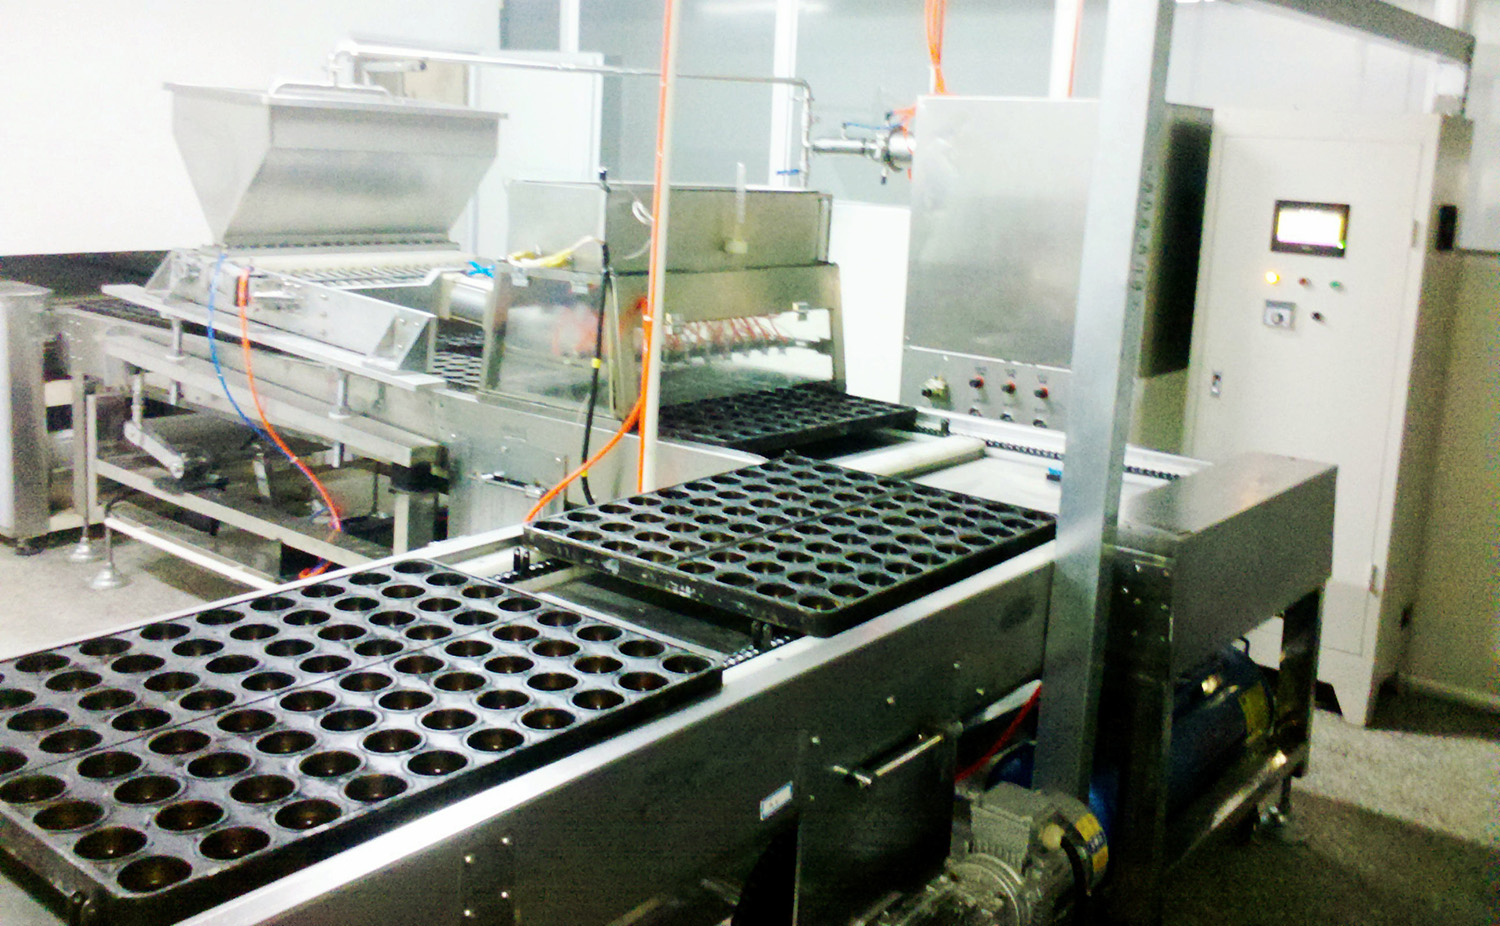 Bagerimaskine udvikler sig til at producere kage med høj teknologi og kvalitet (1)